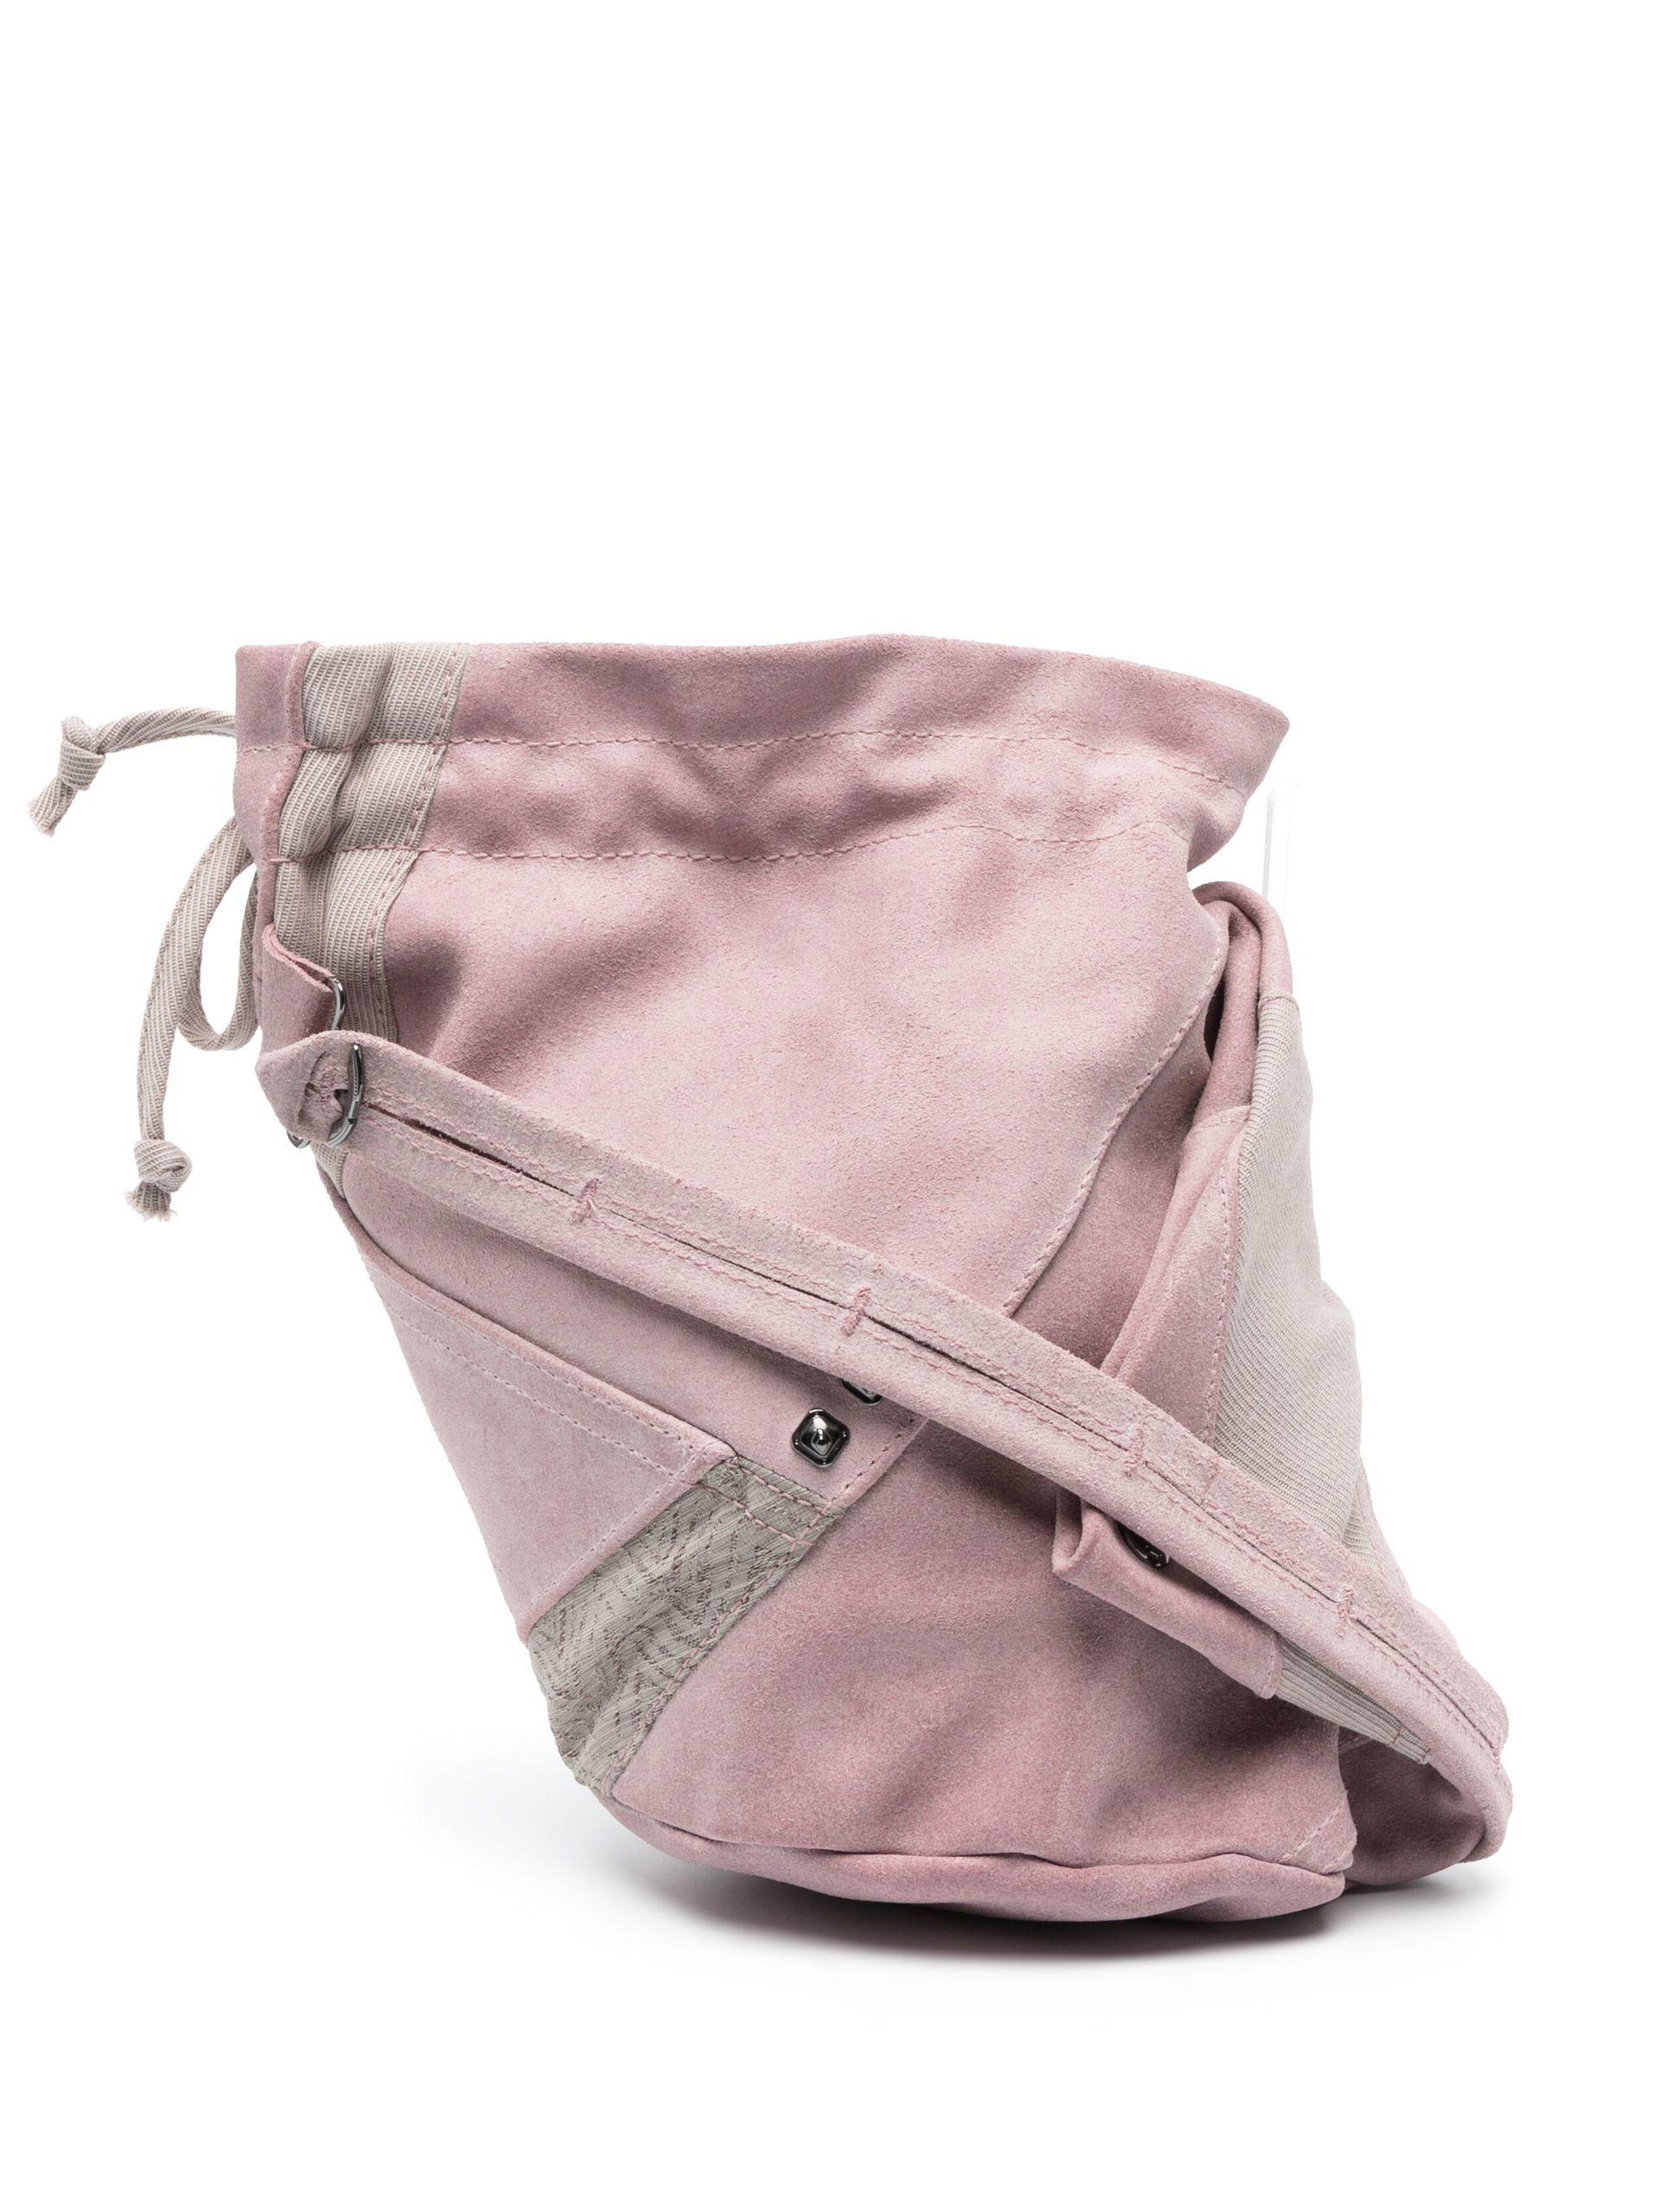 Kiko Kostadinov Oren Small Suede Messenger Bag in Pink for Men | Lyst